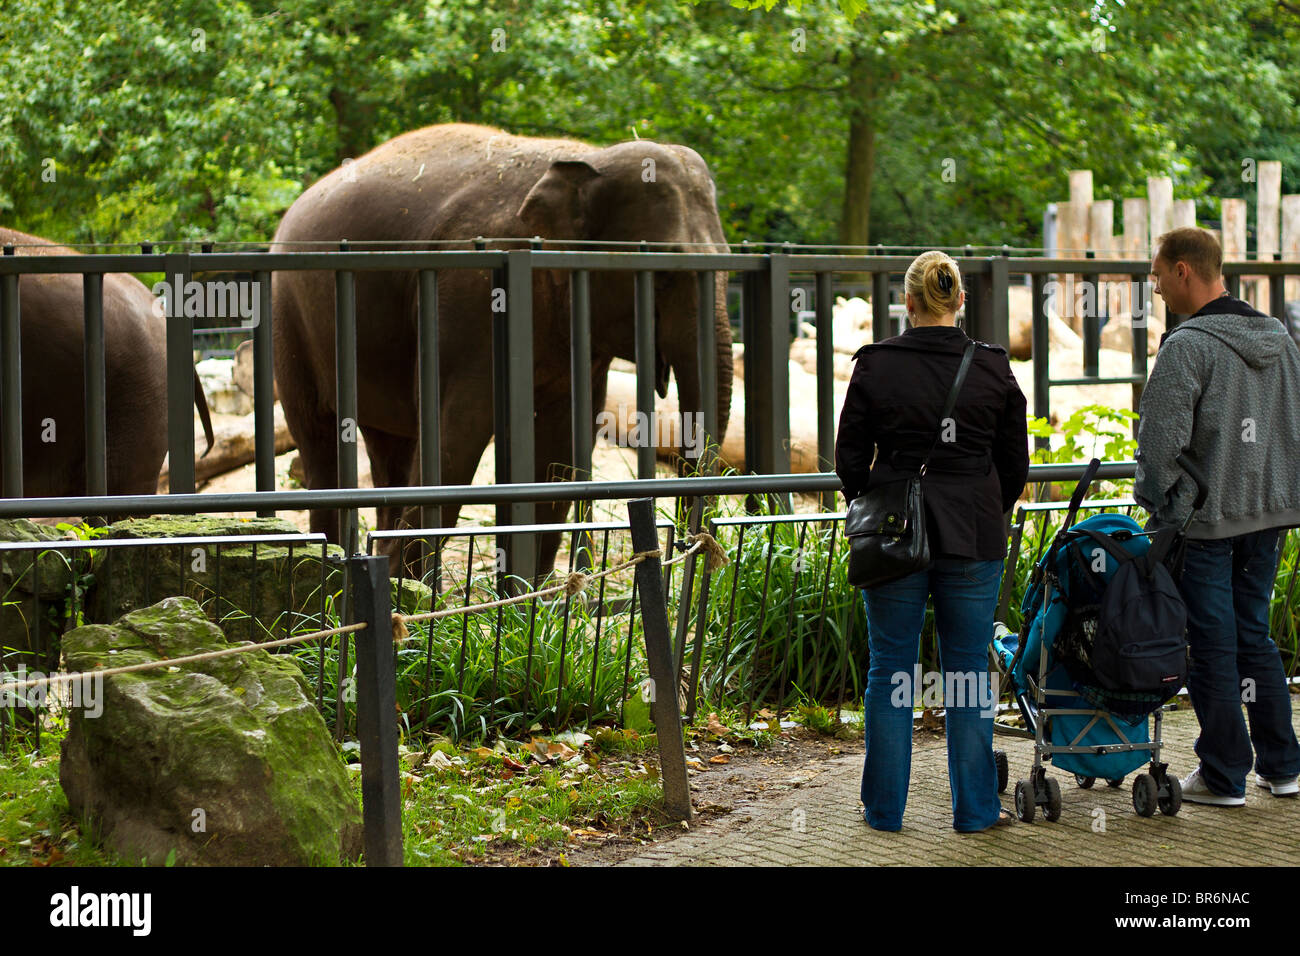 Visite de la famille des éléphants au zoo Artis, Amsterdam, Pays-Bas Banque D'Images